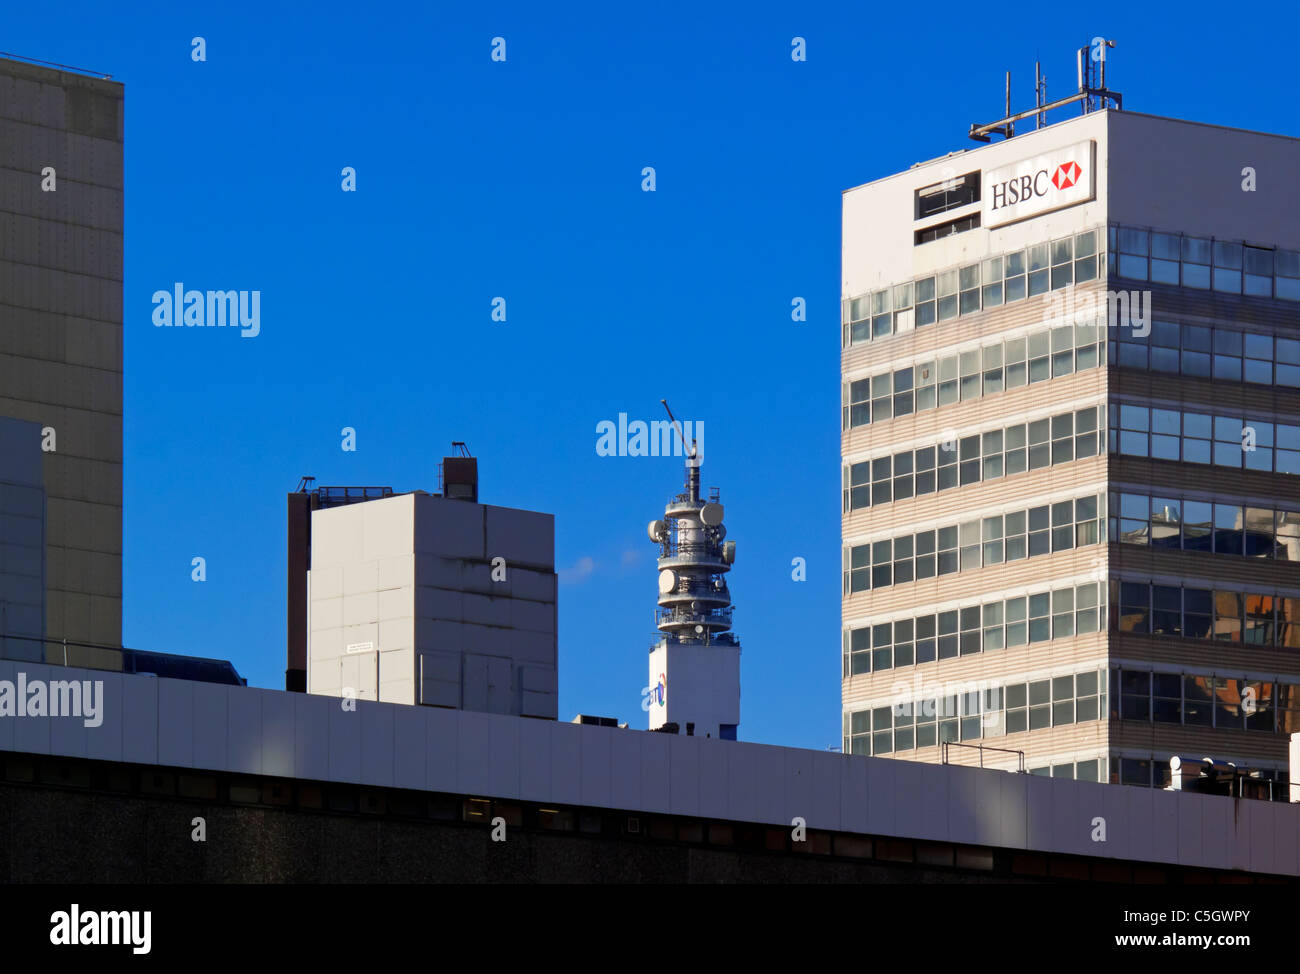 Détail de l'horizon de la ville de Birmingham avec le bâtiment de la HSBC et BT Tower photographié de la gare New Street West Midlands UK Banque D'Images